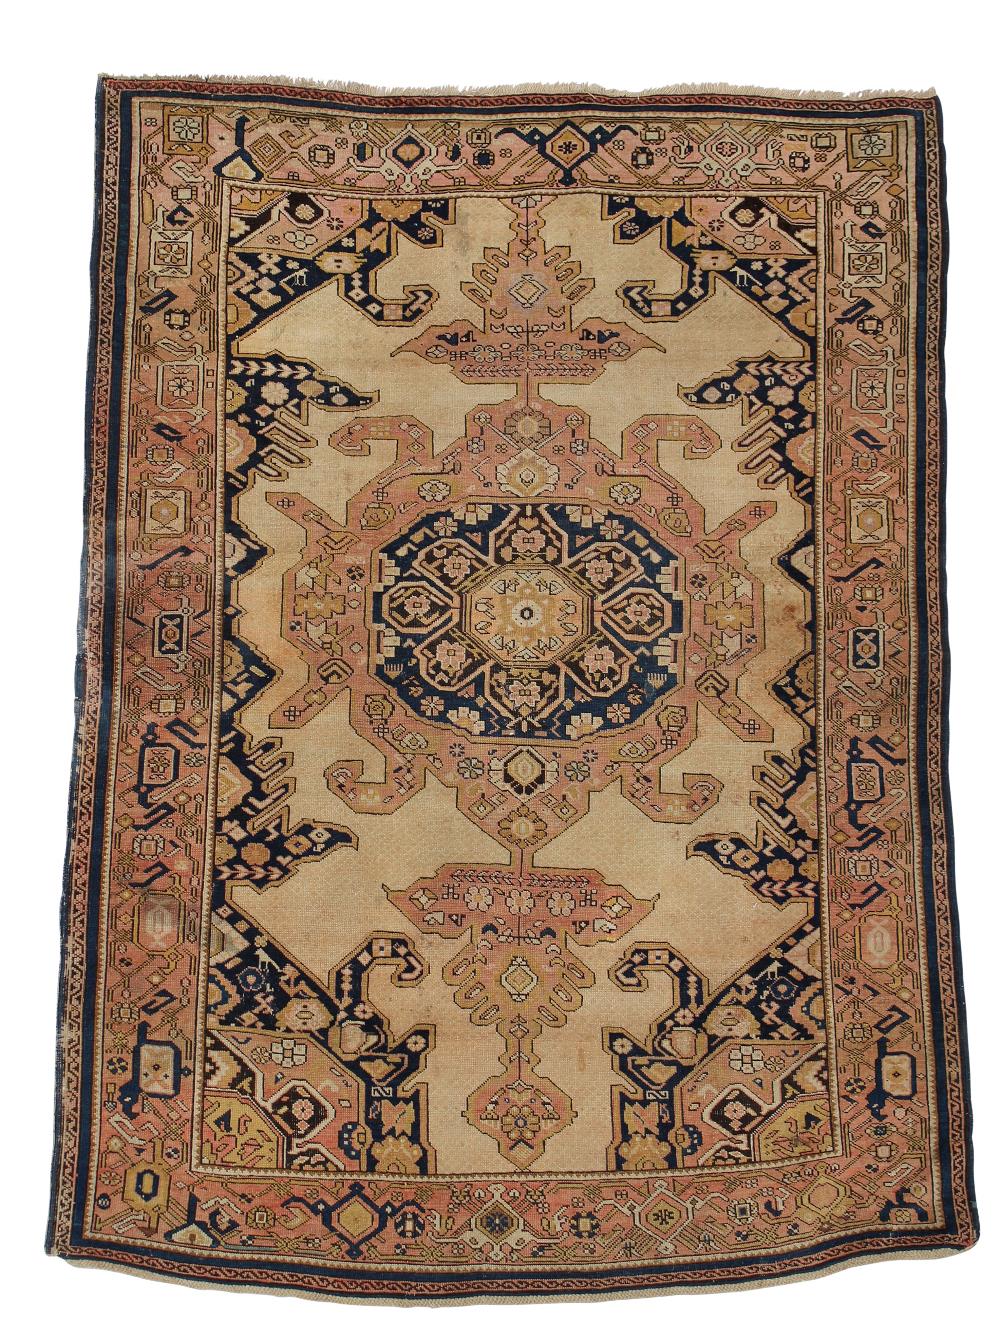 A Persian rug - possibly Niriz 145 x 190cm (57 x 74in)